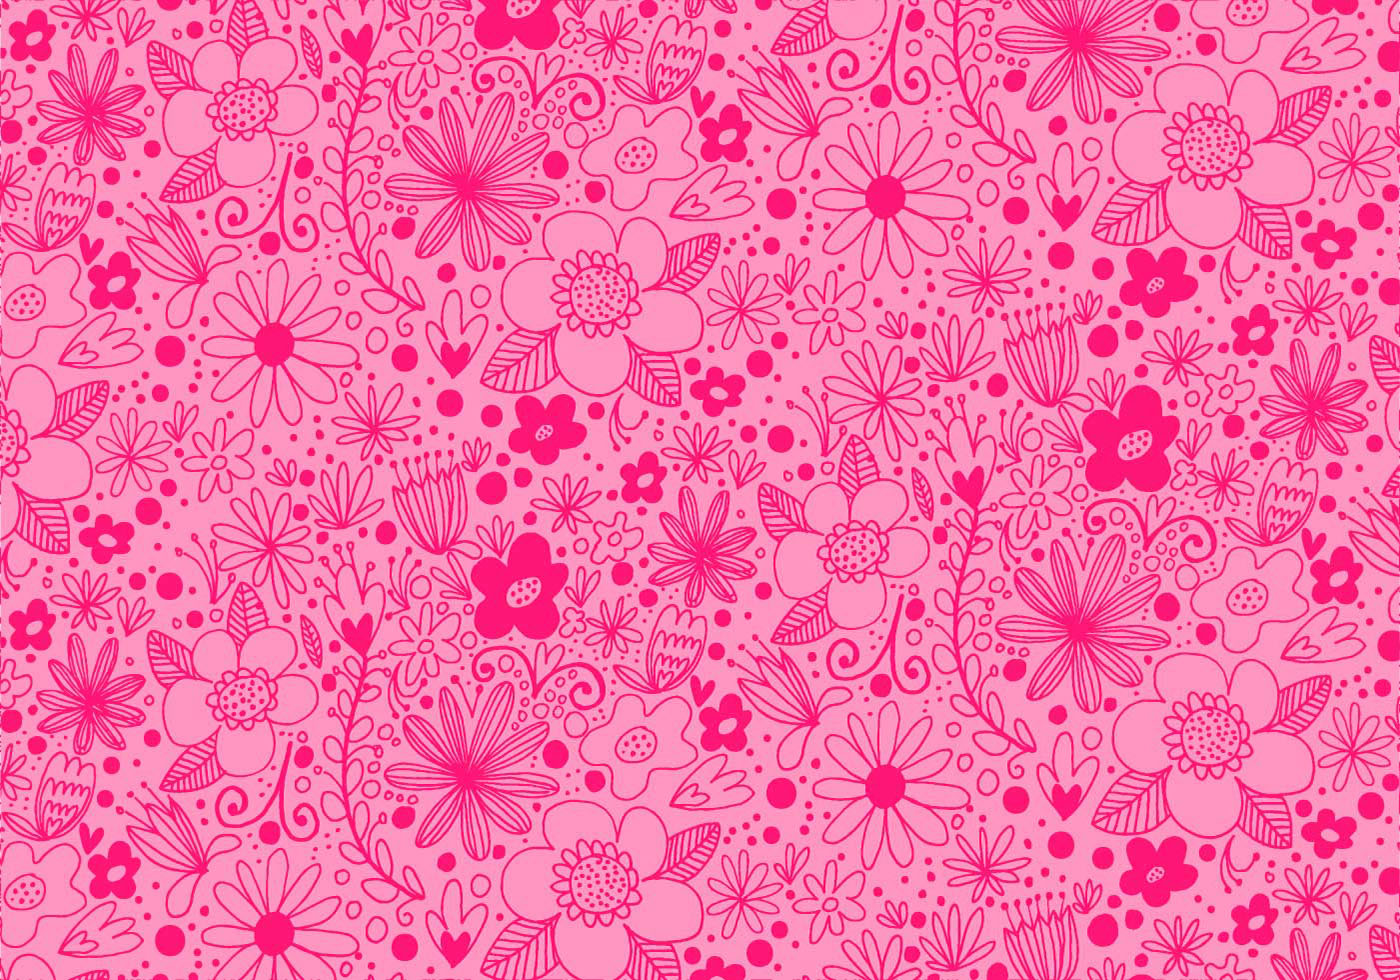 Hintergrundbilder Blumenmuster Rosa - Rosa Blumenmuster vektor abbildung. Illustration von nett ...